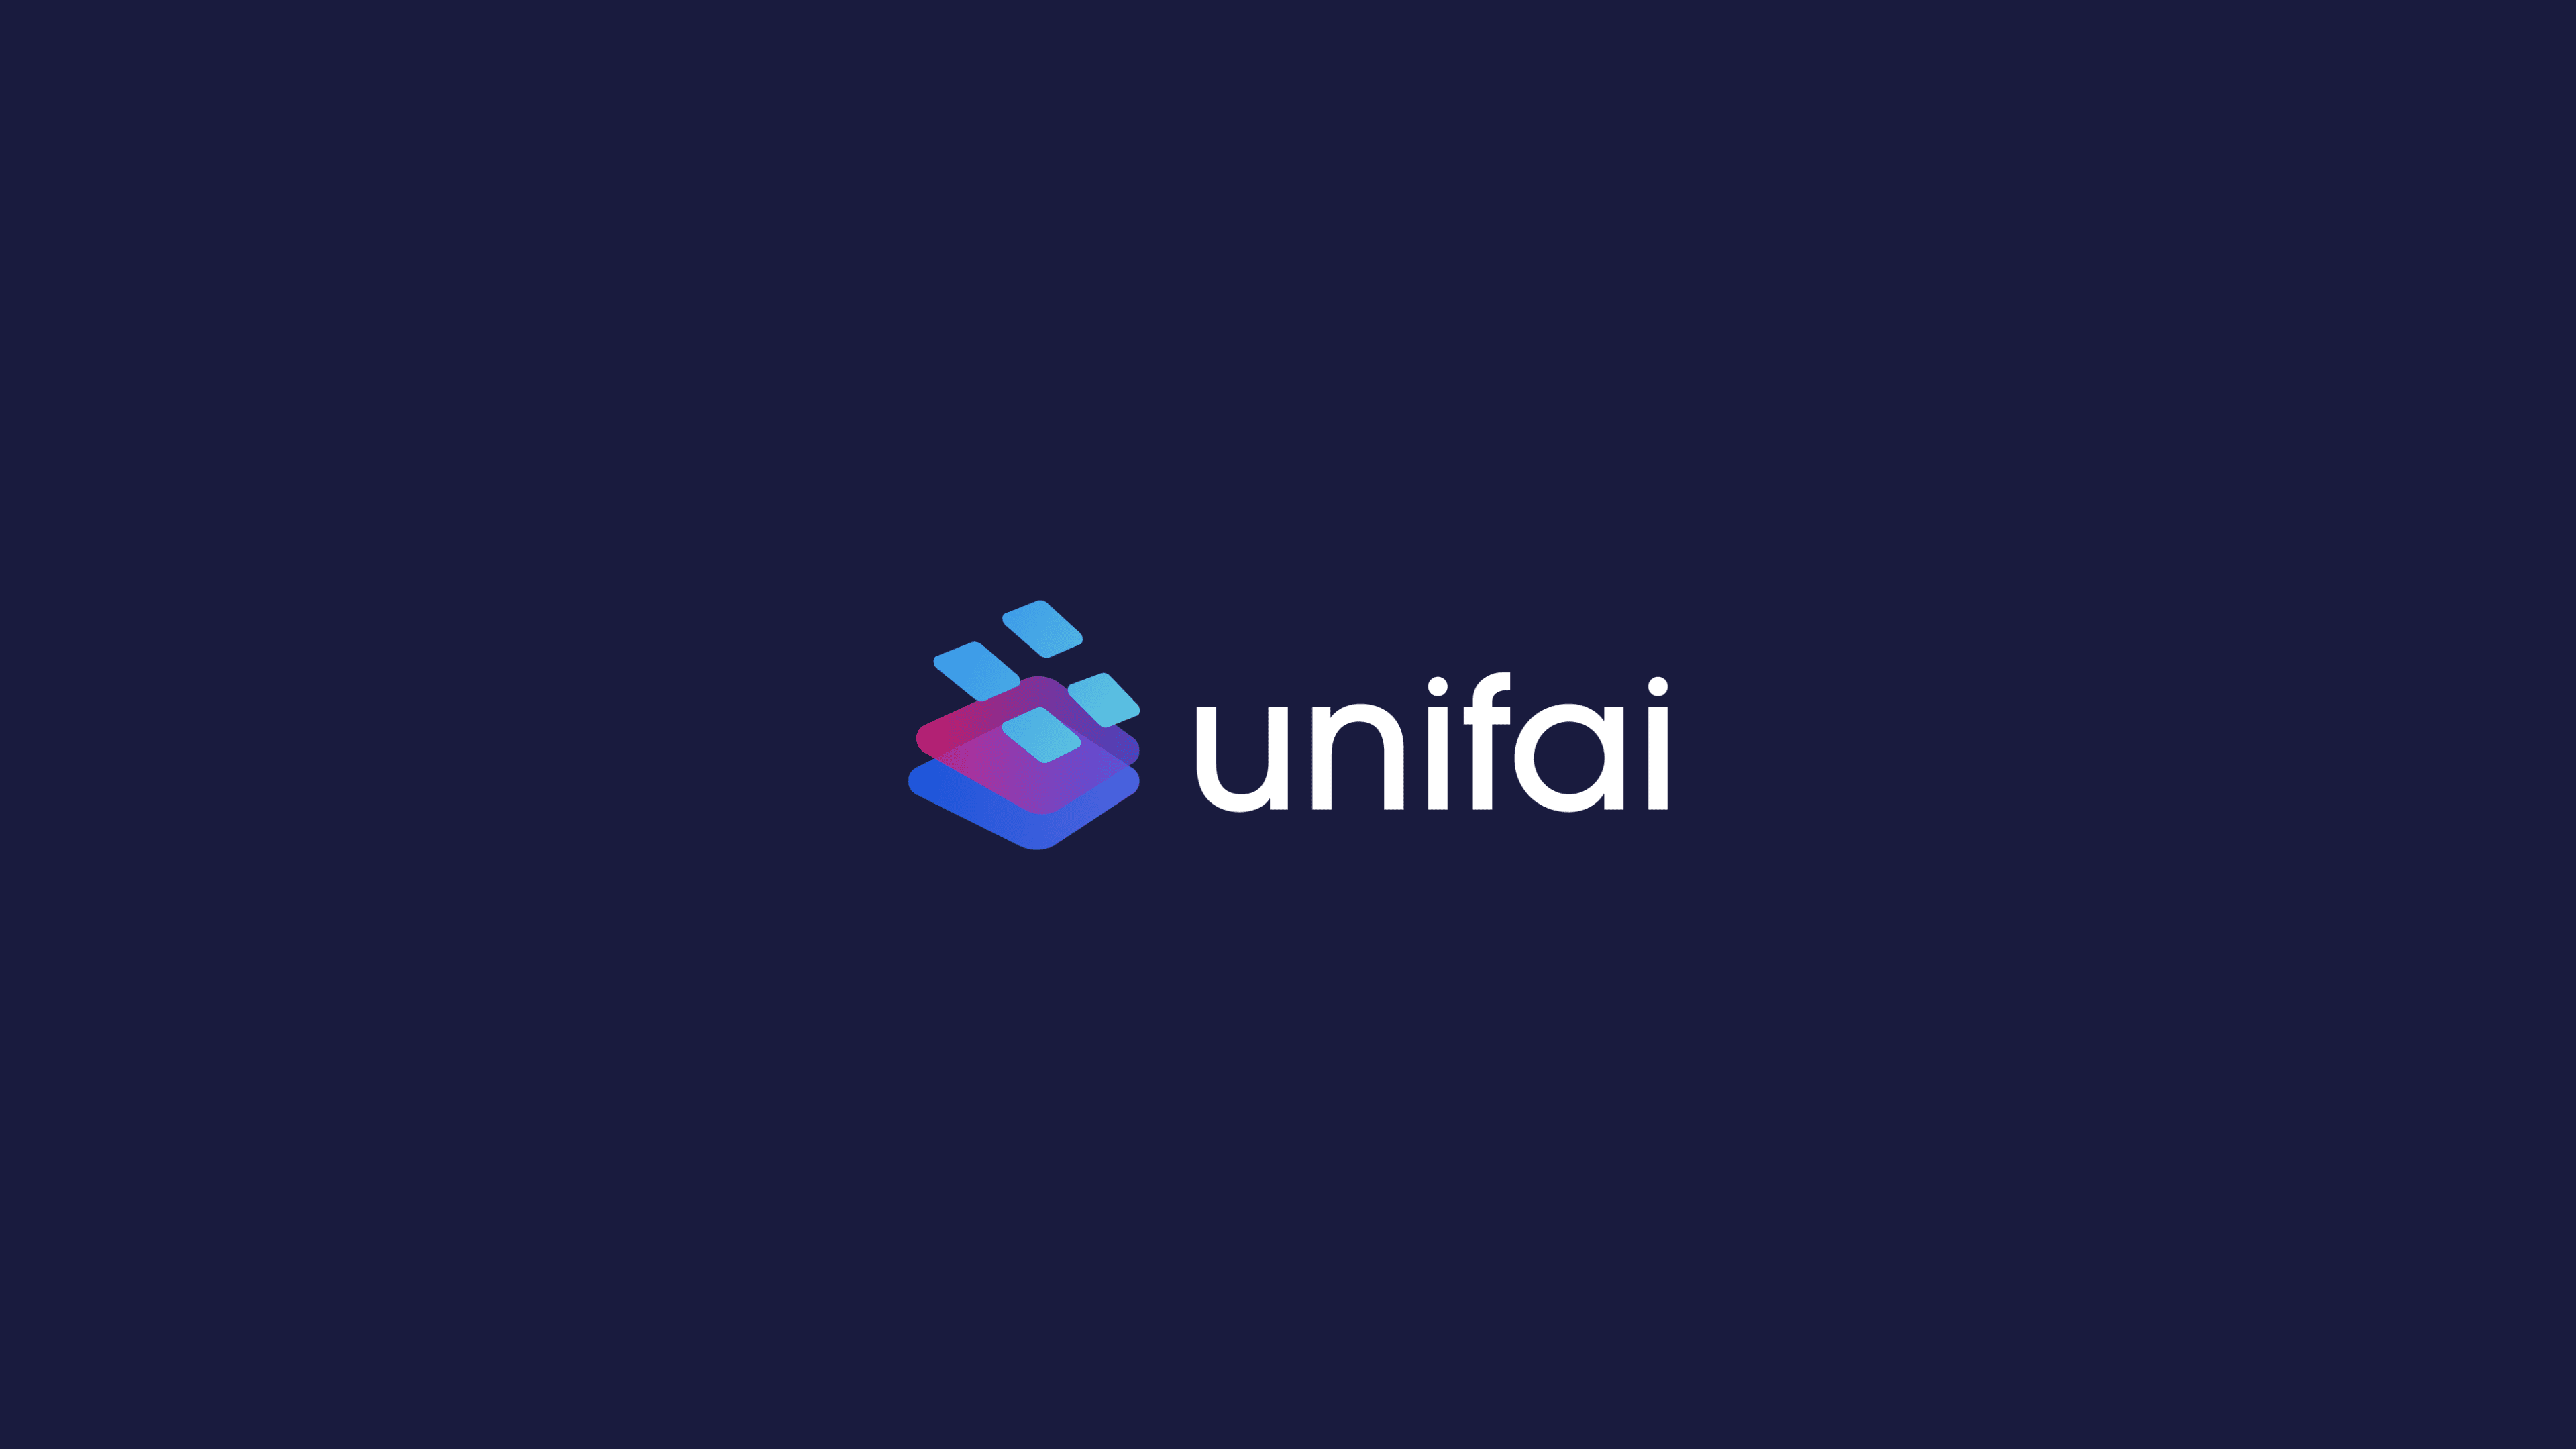 Unifai Explainer 16 Feb 2022 06